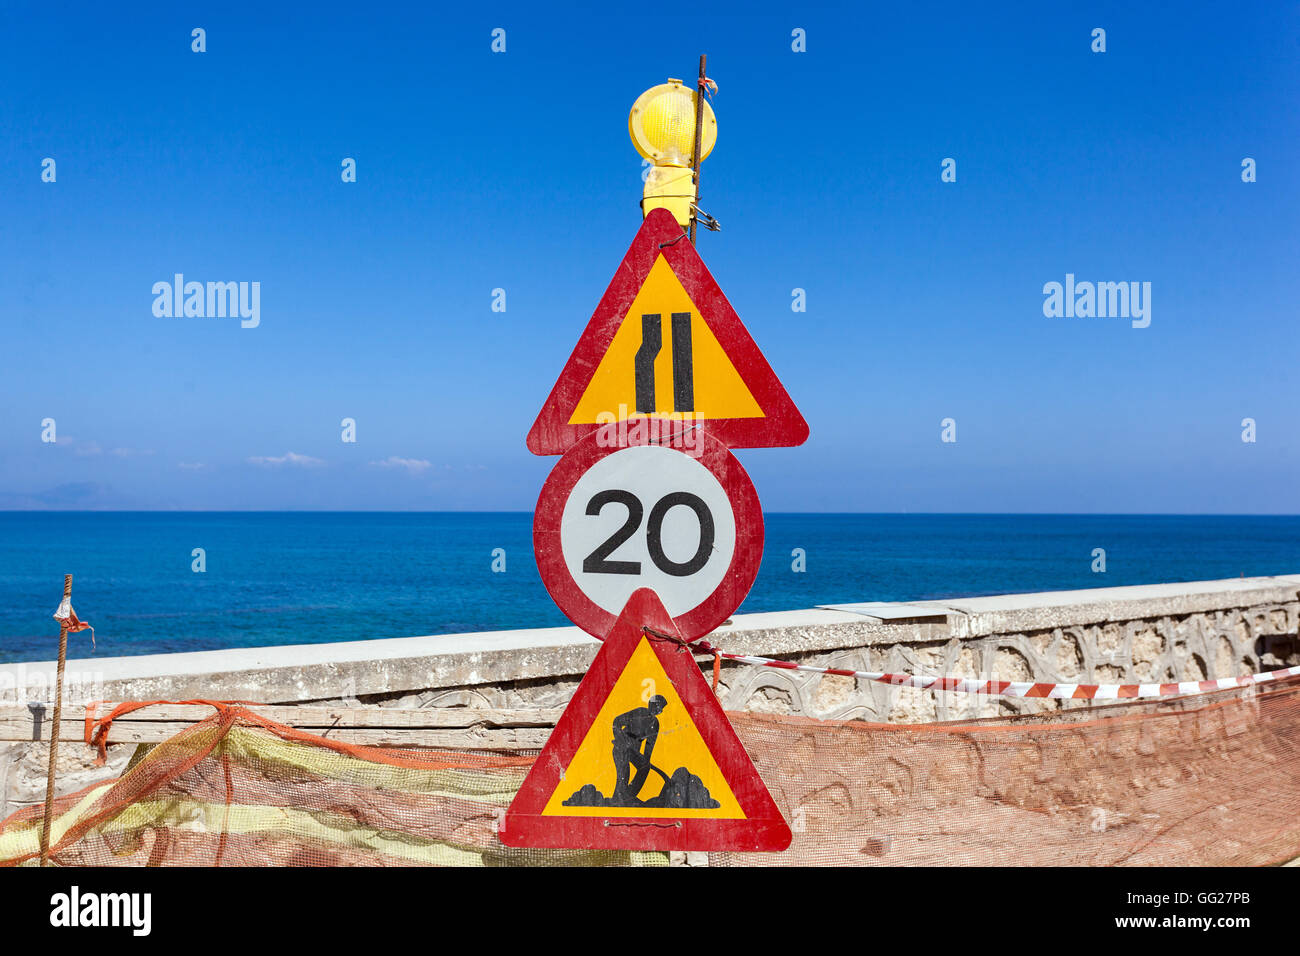 Reparatur der Straße entlang des Meeres, Verkehrsschilder, Rethymno, Kreta, Griechenland Stockfoto